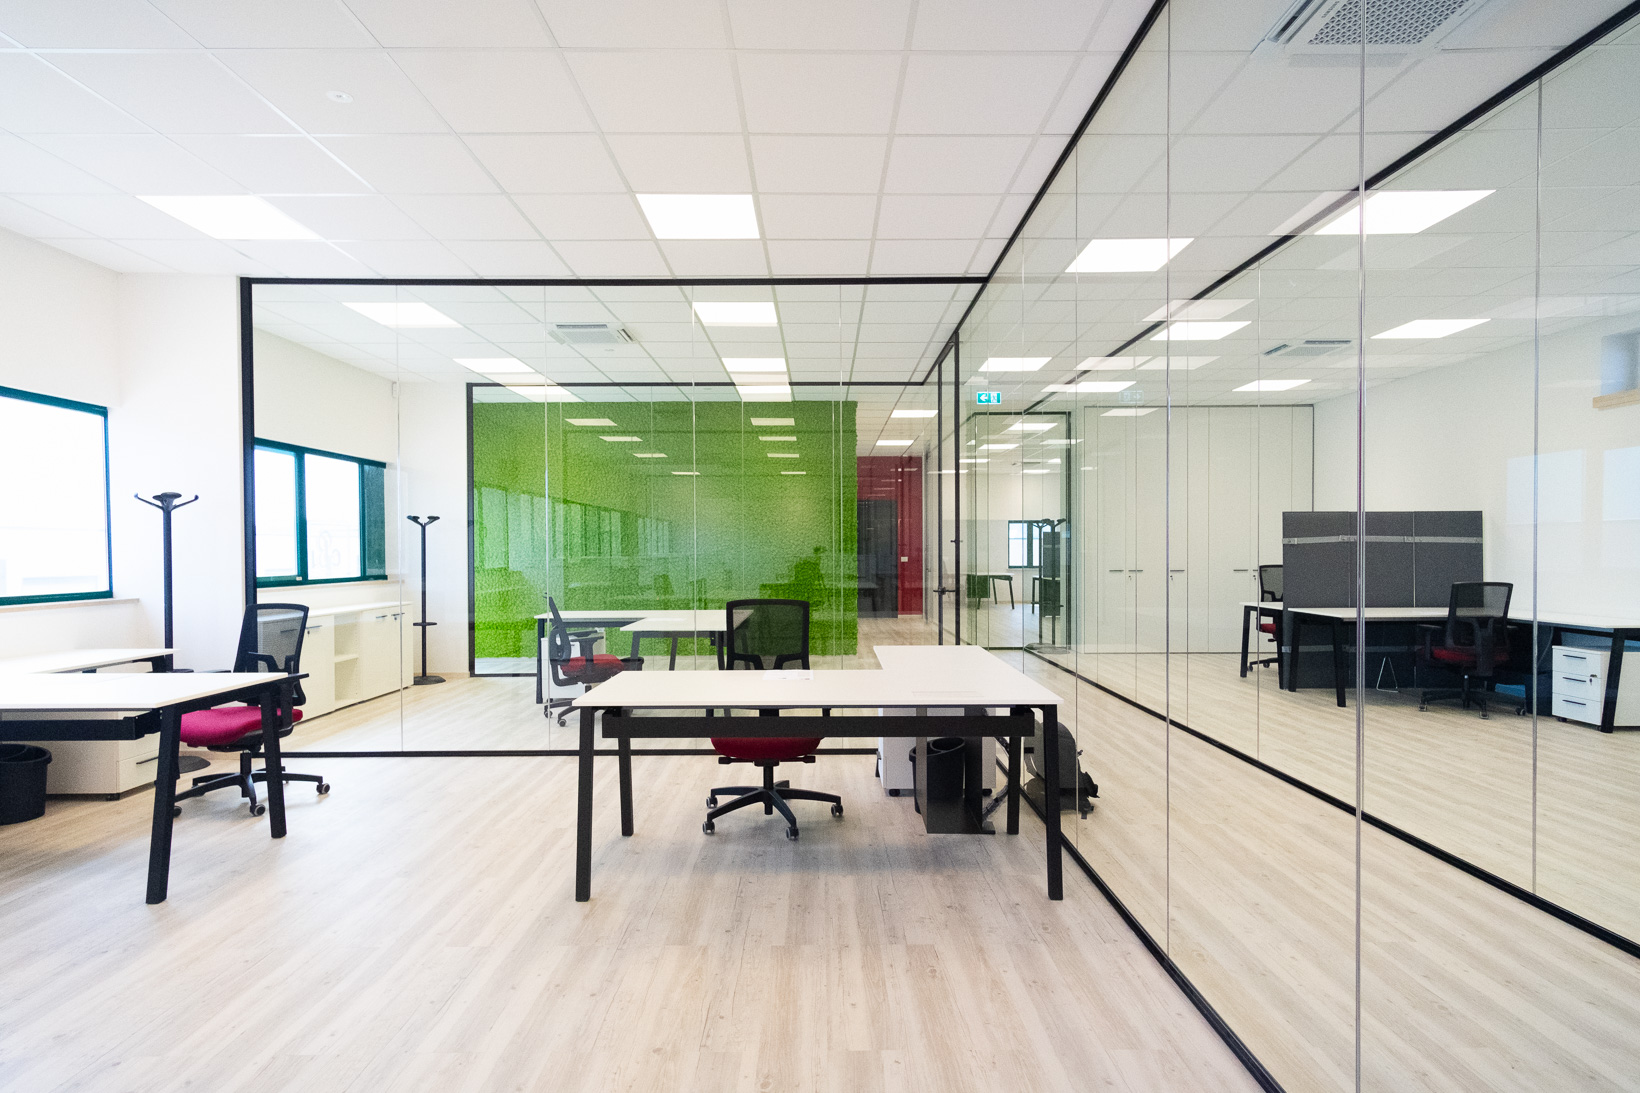 riconfigurazione spazi uffici progettazione e realizzazione completa di uffici -riganelli